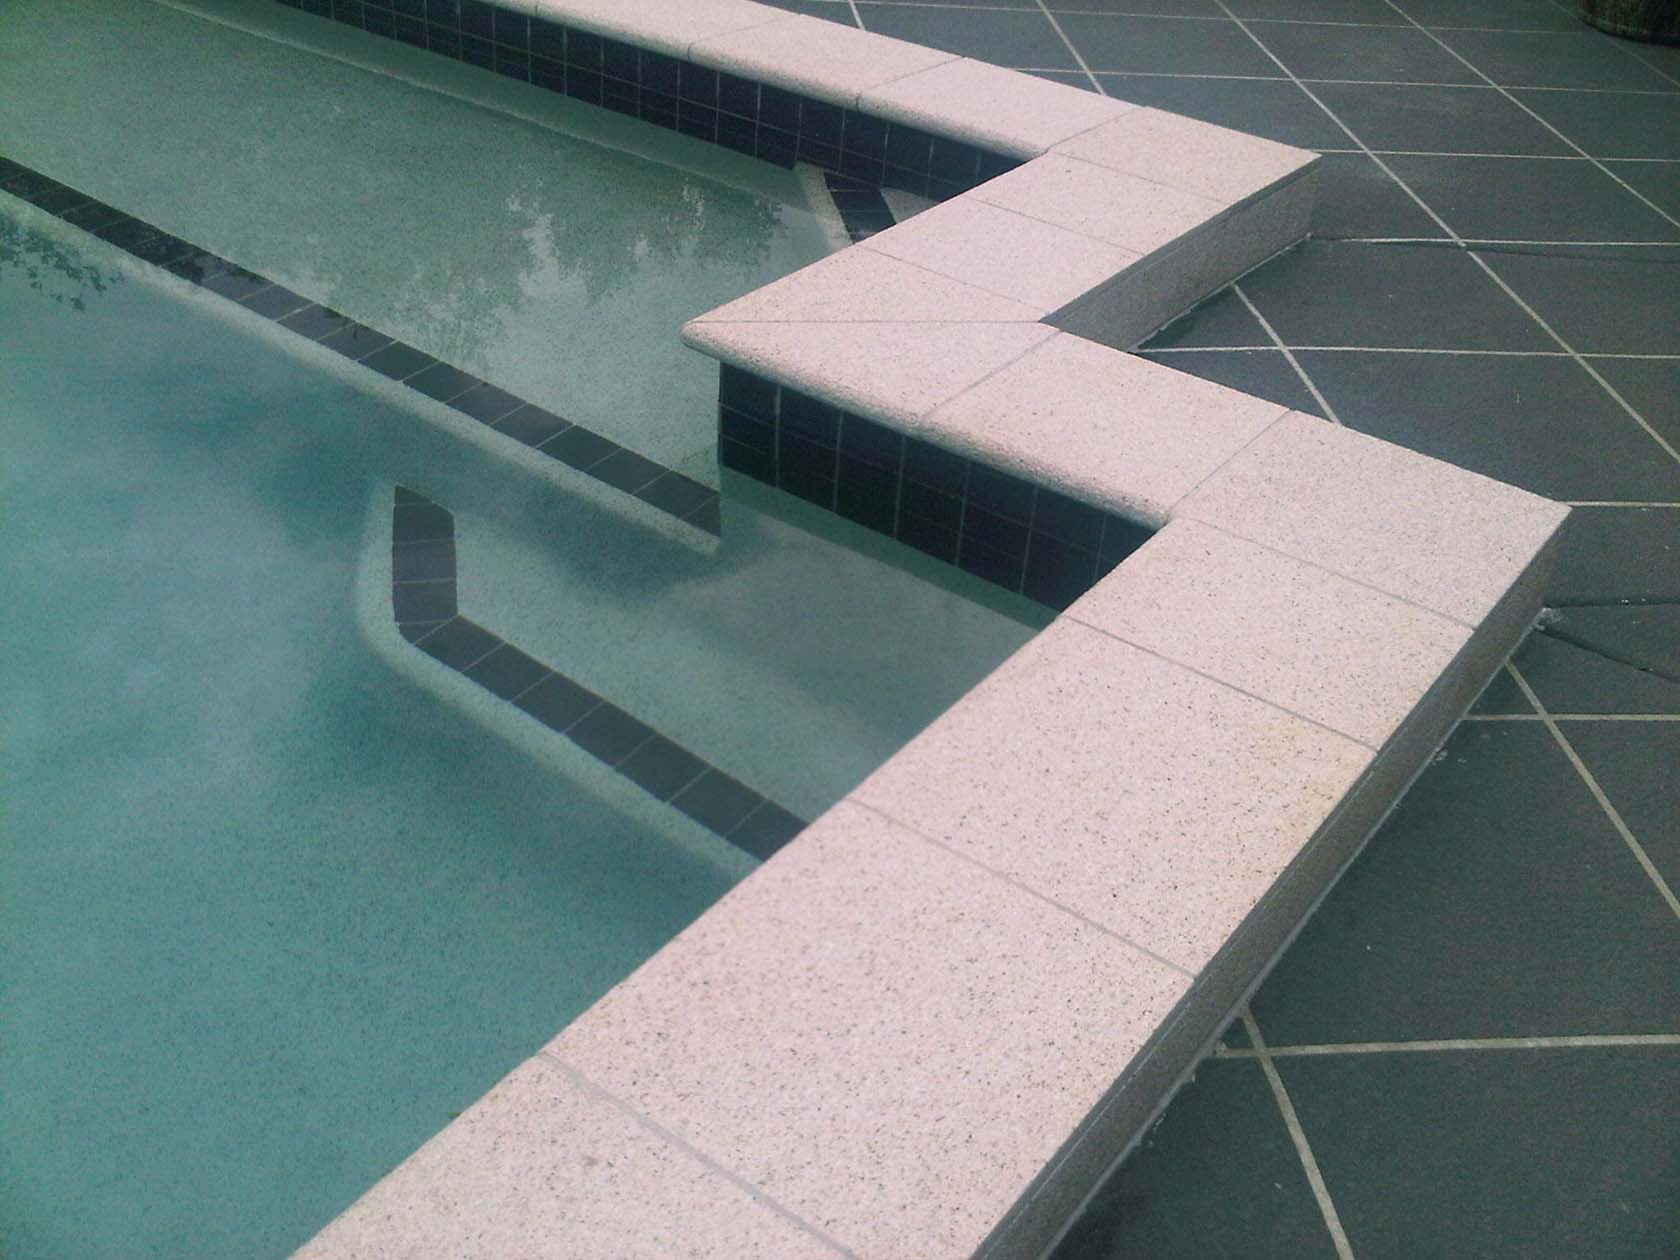 Mushroom Granite rebated bullnose pool coping and surround tiles